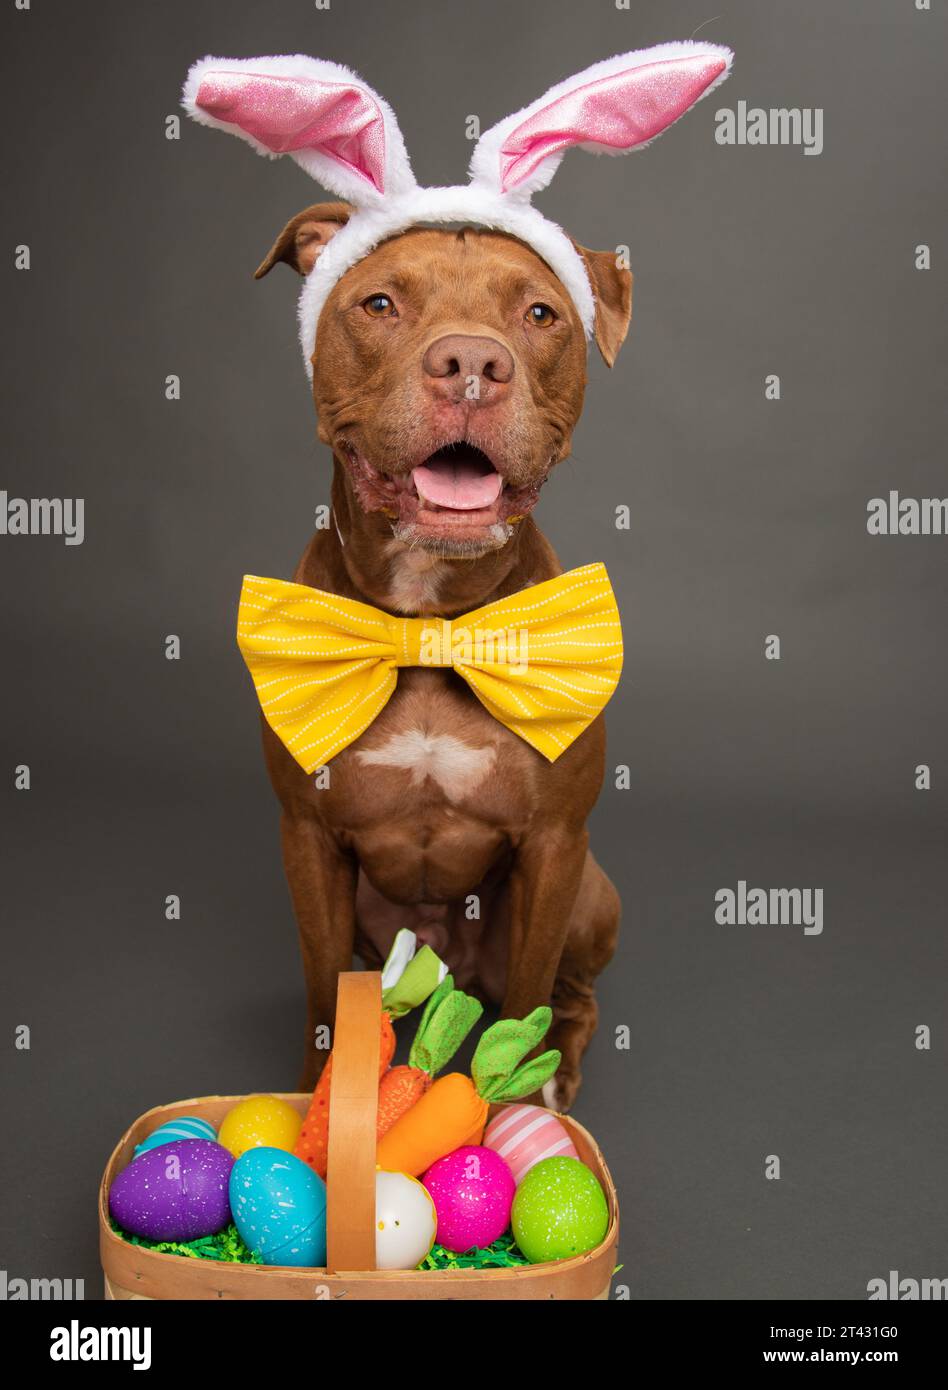 Staffordshire Bull terrier chien habillé comme un lapin de Pâques assis à côté d'un panier rempli d'œufs de pâques peints Banque D'Images